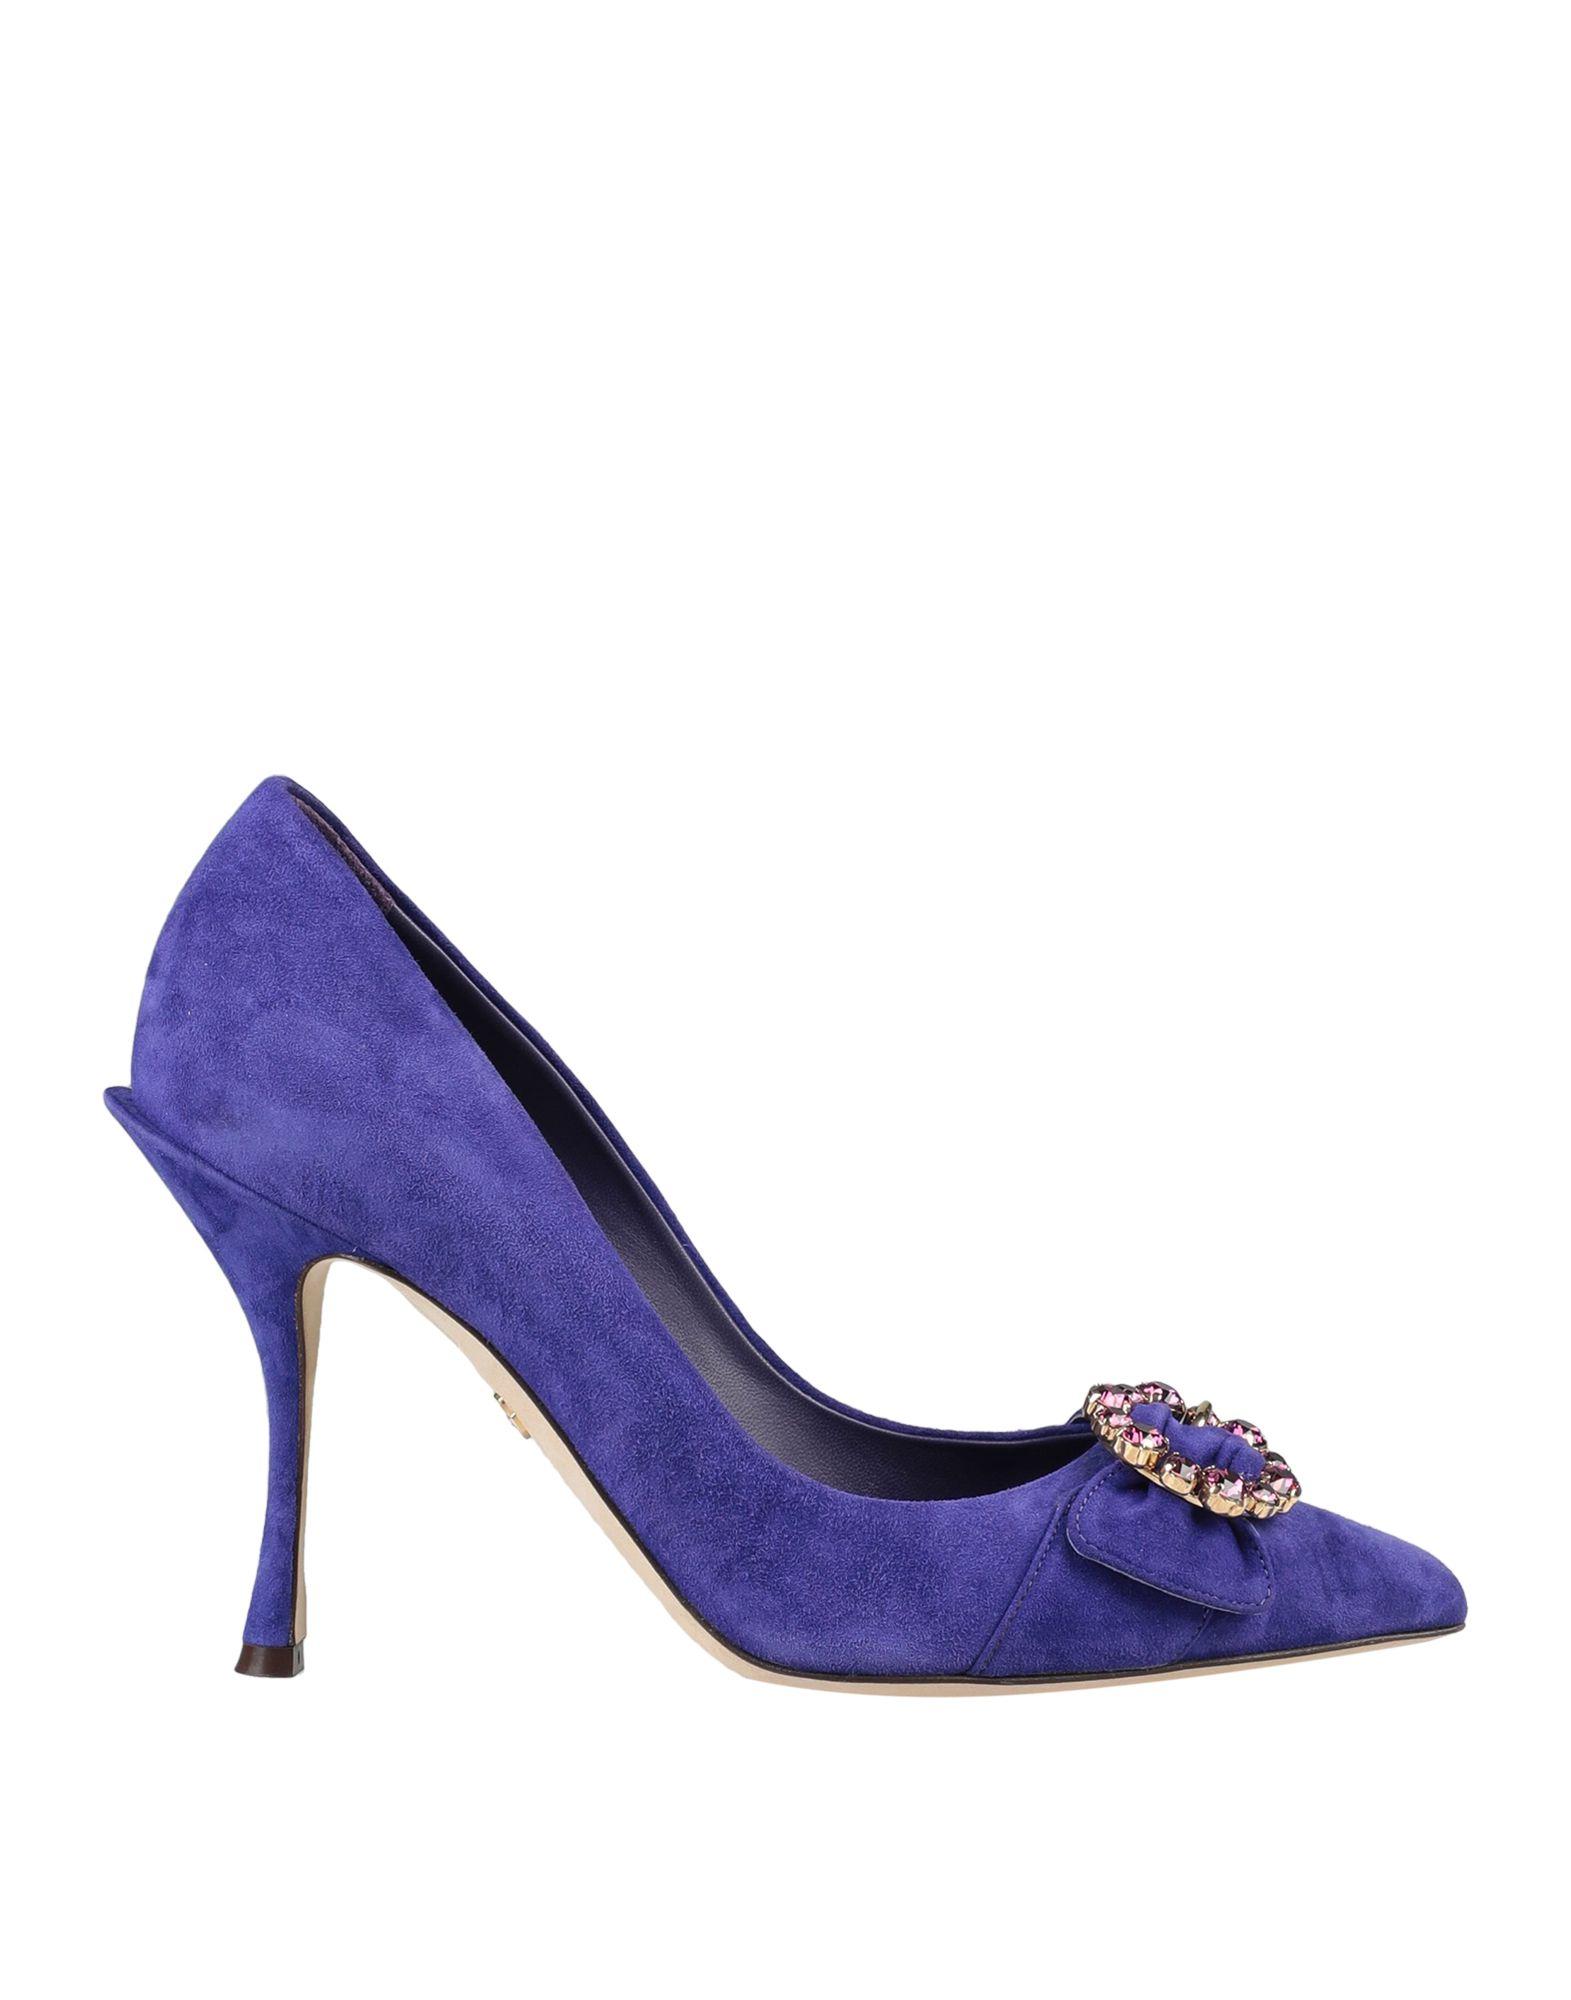 Dolce & Gabbana Suede Court in Dark Purple (Purple) - Lyst